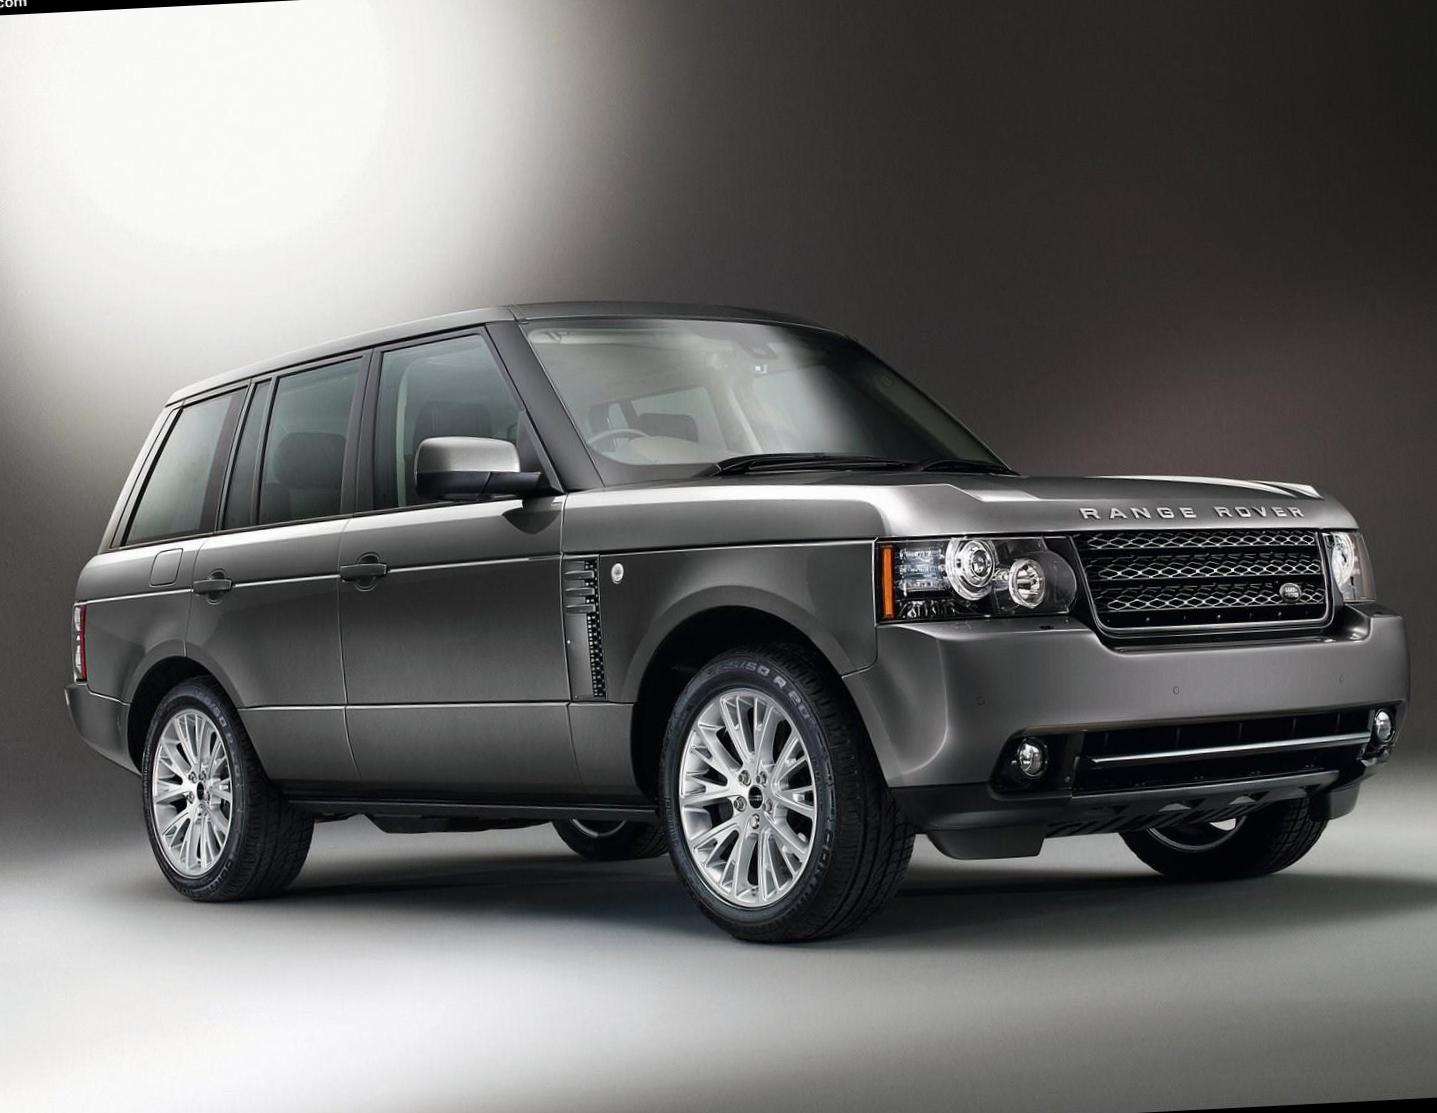 Land Rover Range Rover concept 2012